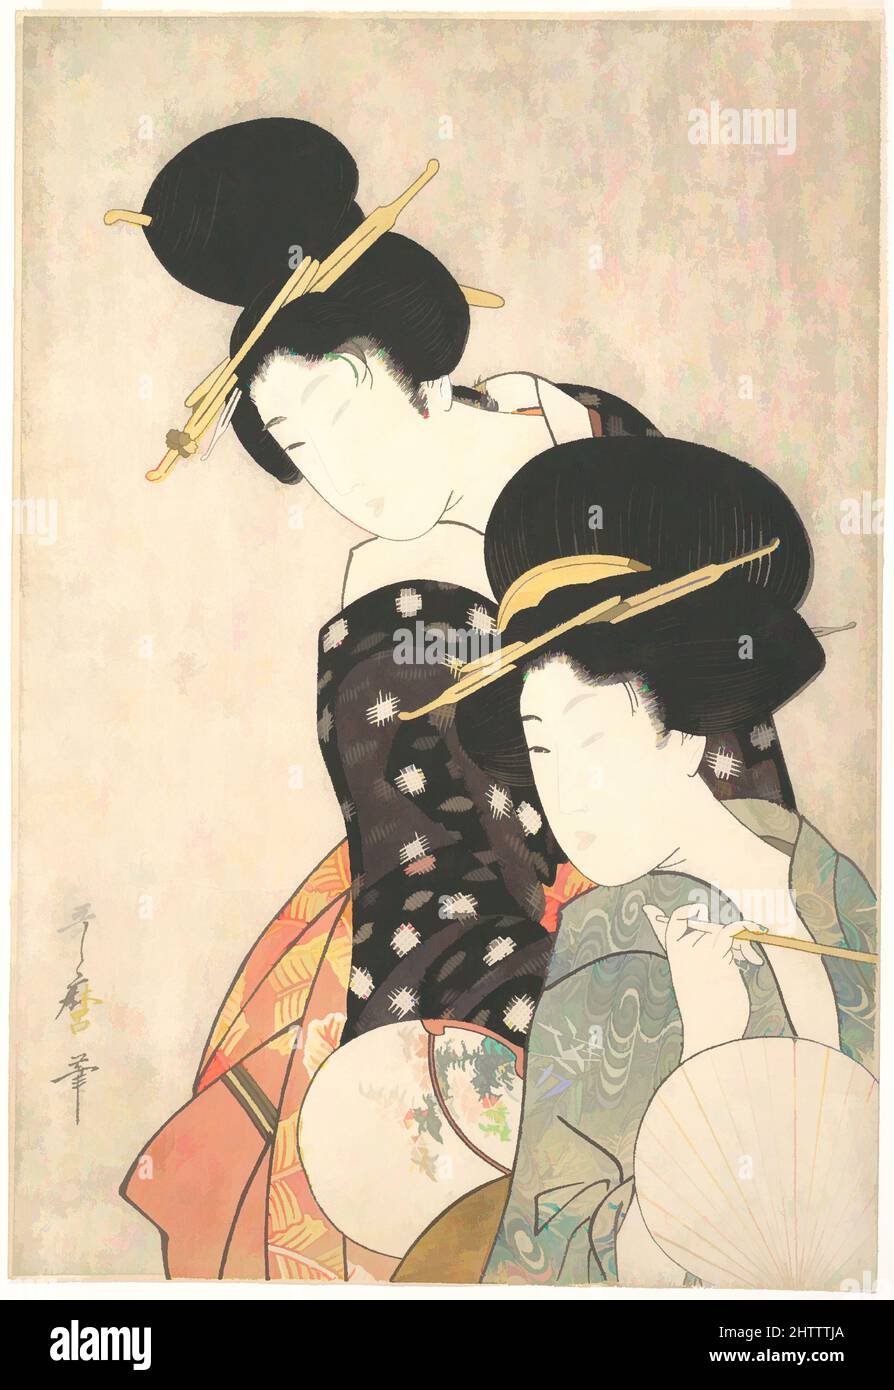 Art inspiré par deux femmes, période Edo (1615–1868), env. 1790, Japon, imprimé polychrome sur bois ; encre et couleur sur papier, 15 3/8 x 10 1/8 po. (39,1 x 25,7 cm), Prints, Kitagawa Utamaro (japonais, 1753?–1806), Utamaro a placé ces deux beautés l'une au-dessus de l'autre dans un inoubliable, oeuvres classiques modernisées par Artotop avec un peu de modernité. Formes, couleur et valeur, impact visuel accrocheur sur l'art émotions par la liberté d'œuvres d'art d'une manière contemporaine. Un message intemporel qui cherche une nouvelle direction créative. Artistes qui se tournent vers le support numérique et créent le NFT Artotop Banque D'Images